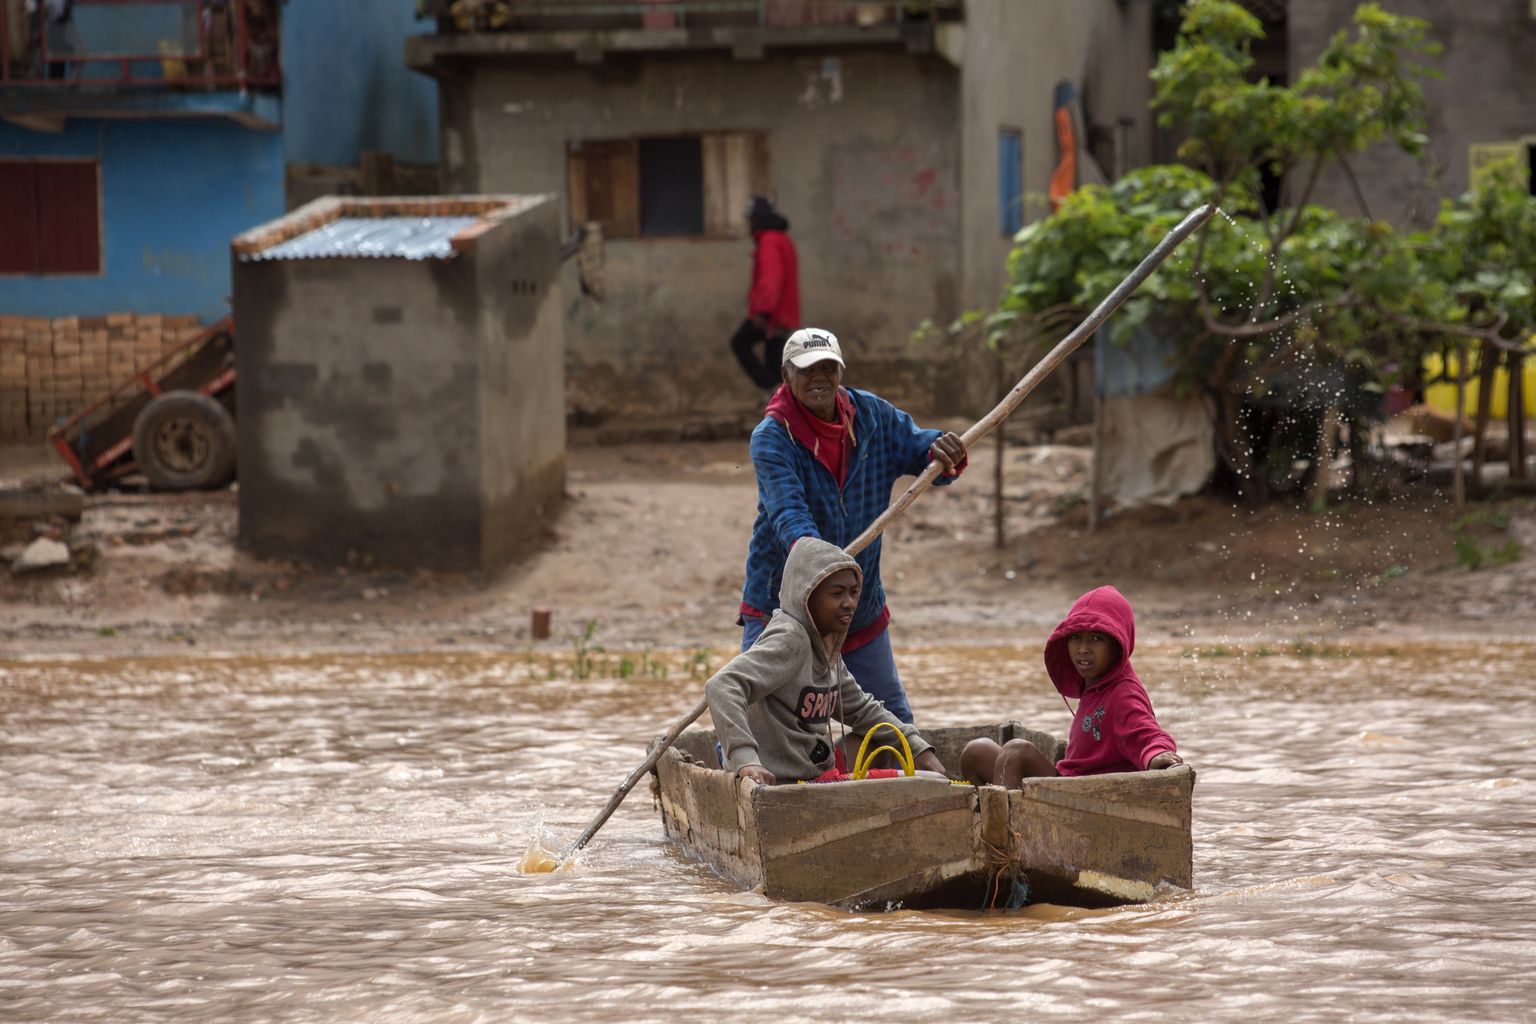 Tormikahju tulvavete näol Madagaskari pealinna Antananarivo tänavail laupäeval, 28. jaanuaril.